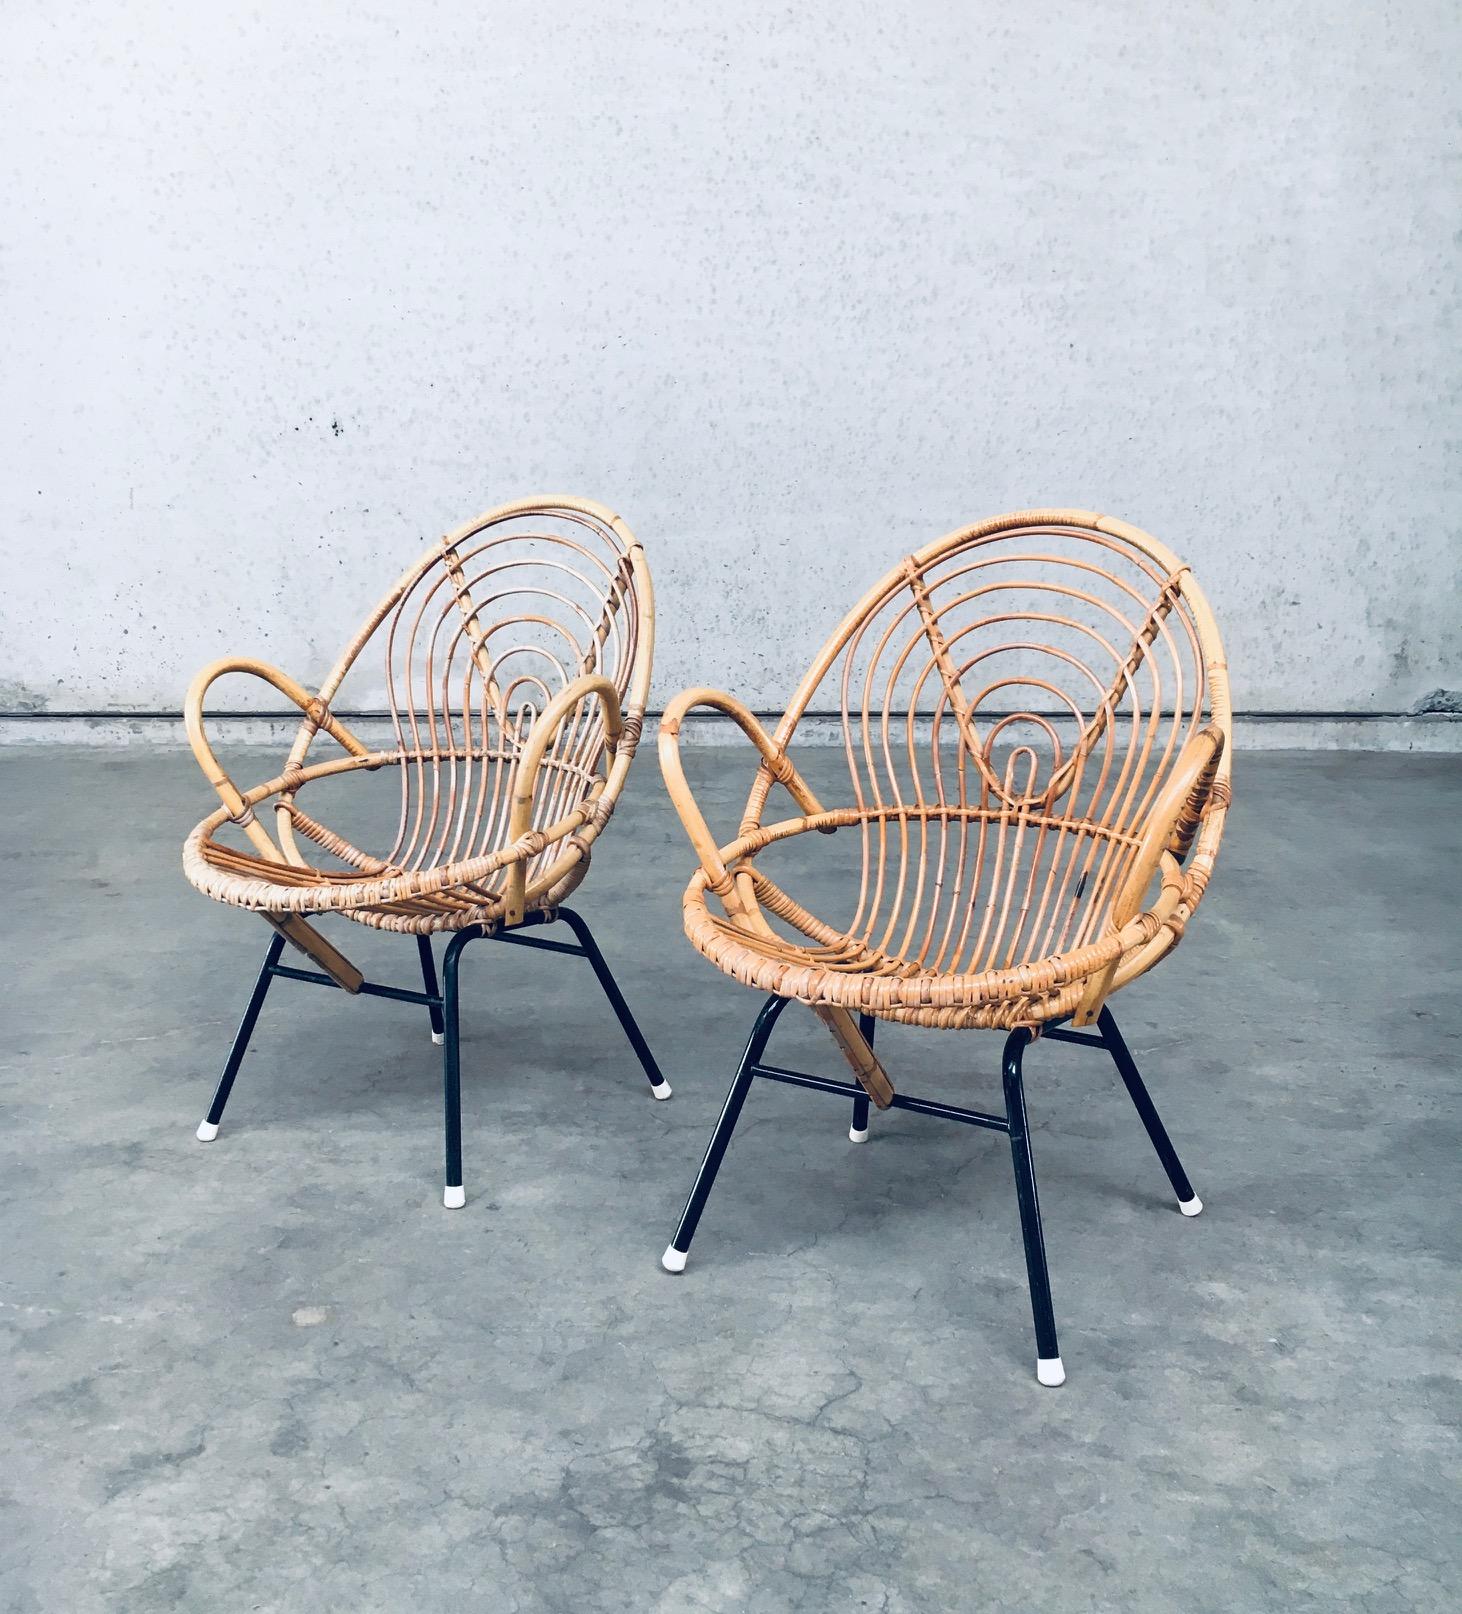 Paire de chaises longues en rotin / bambou de Rohe Noordwolde, design hollandais du milieu du siècle dernier. Fabriqué aux Pays-Bas, période 1950/60. Construction en bambou / rotin avec base en métal noir. Ces fauteuils ont un joli motif rond dans